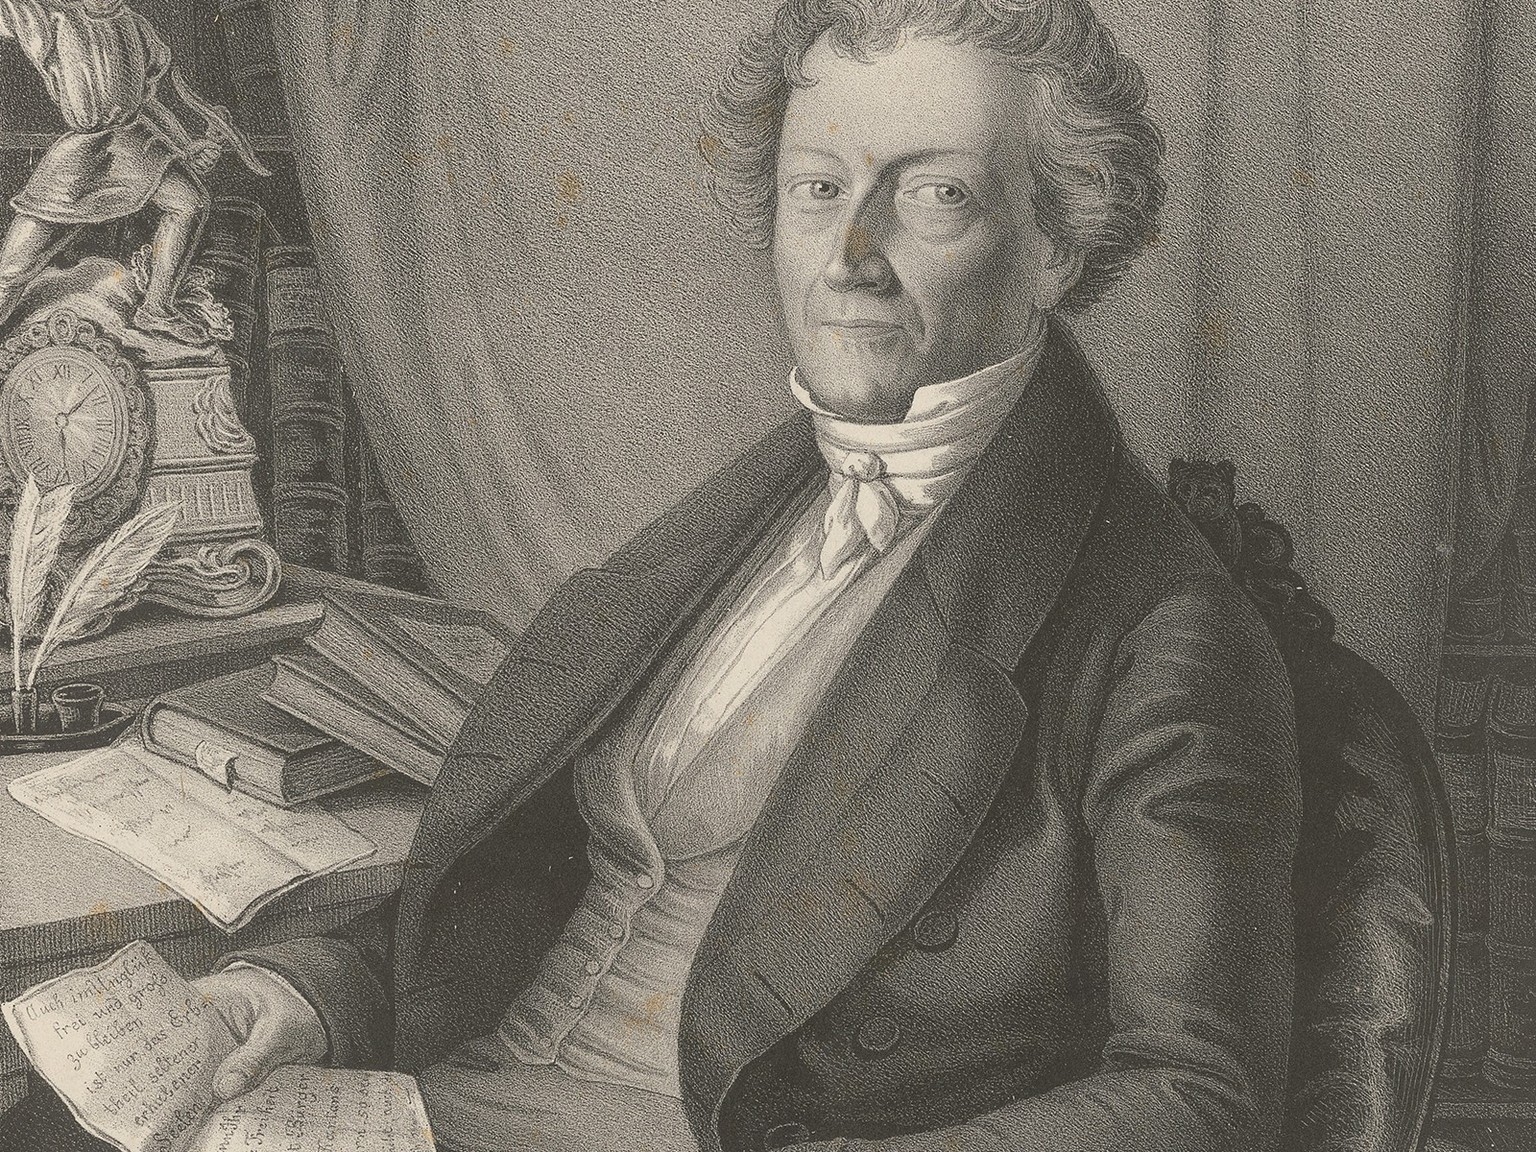 Porträt von Dr. Jakob Robert Steiger, um 1845.
https://www.e-rara.ch/zuz/doi/10.3931/e-rara-58321